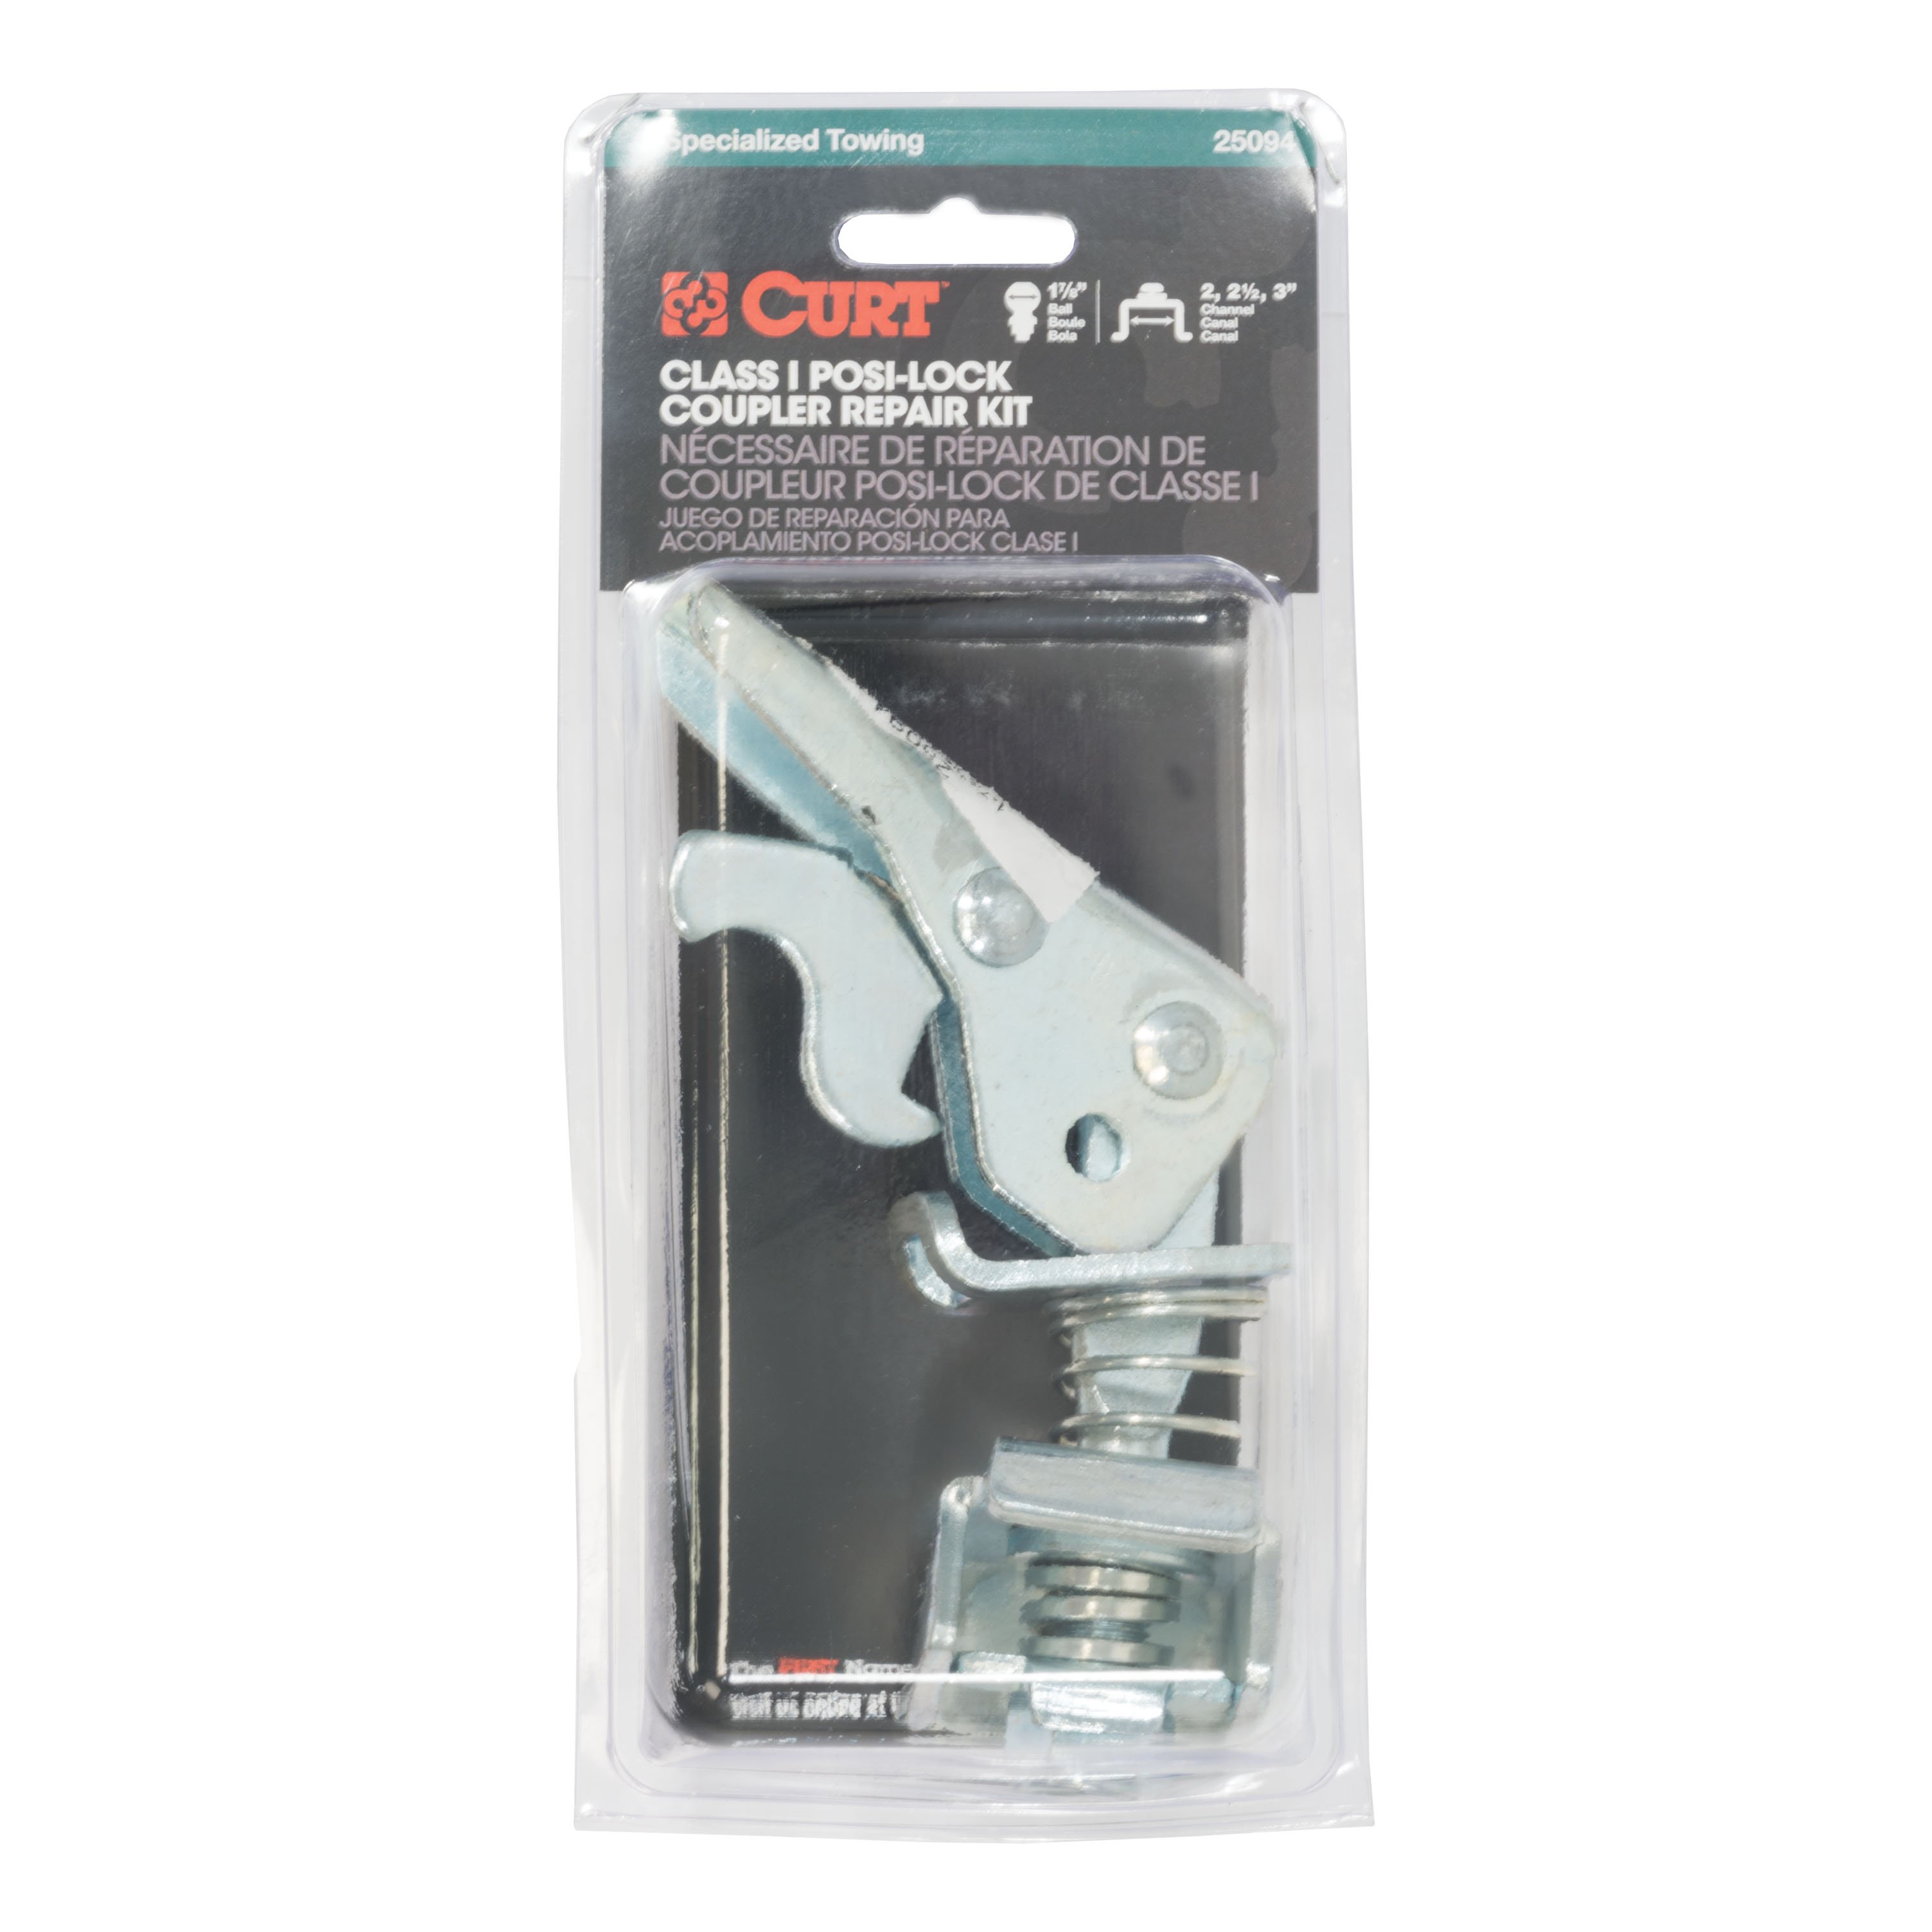 Curt Repair Kit 1.875 Inch Coupler 25094